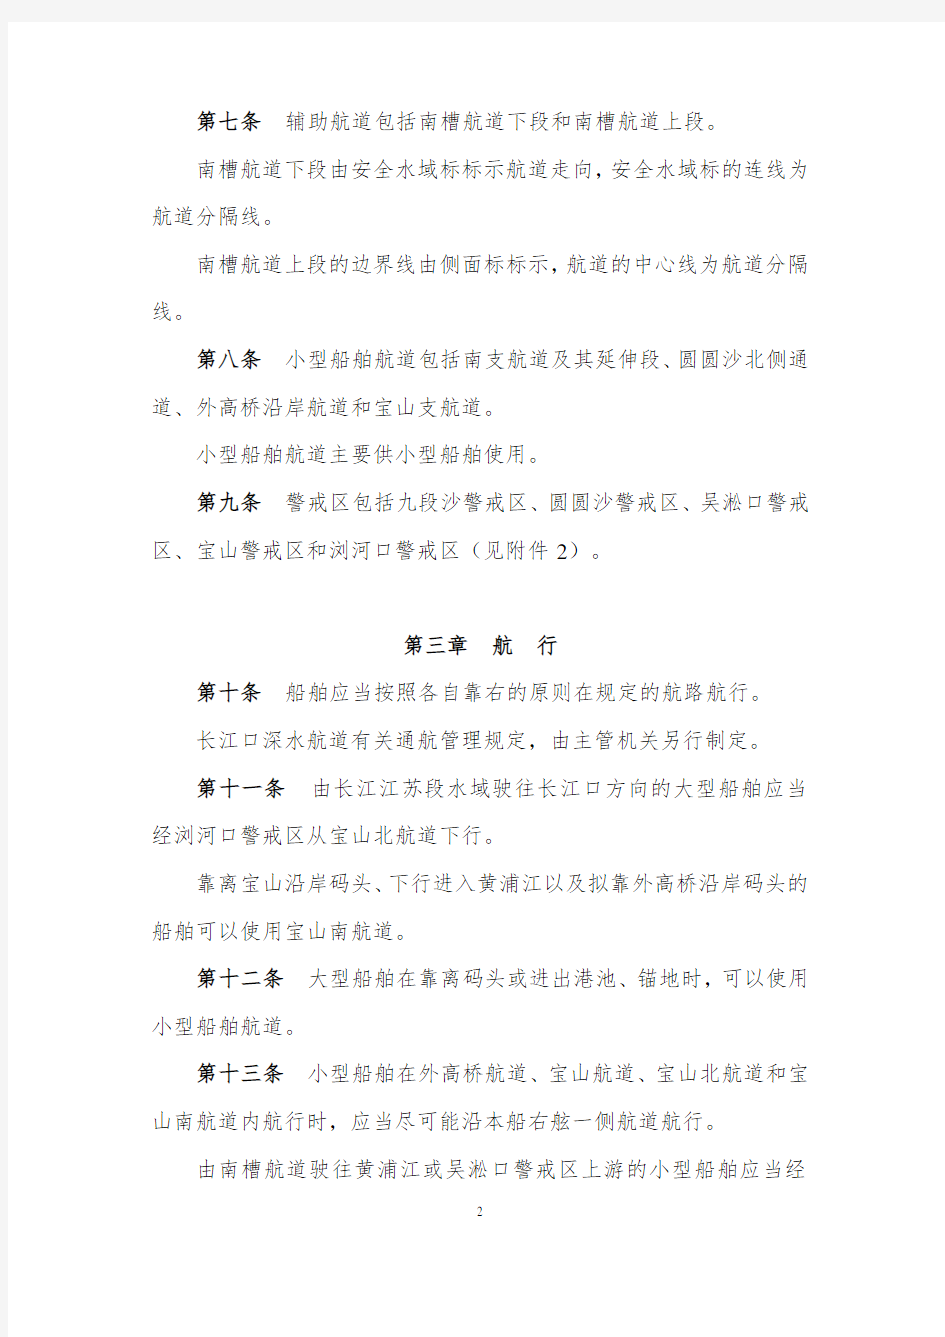 长江上海段船舶定线制规定(发布稿)